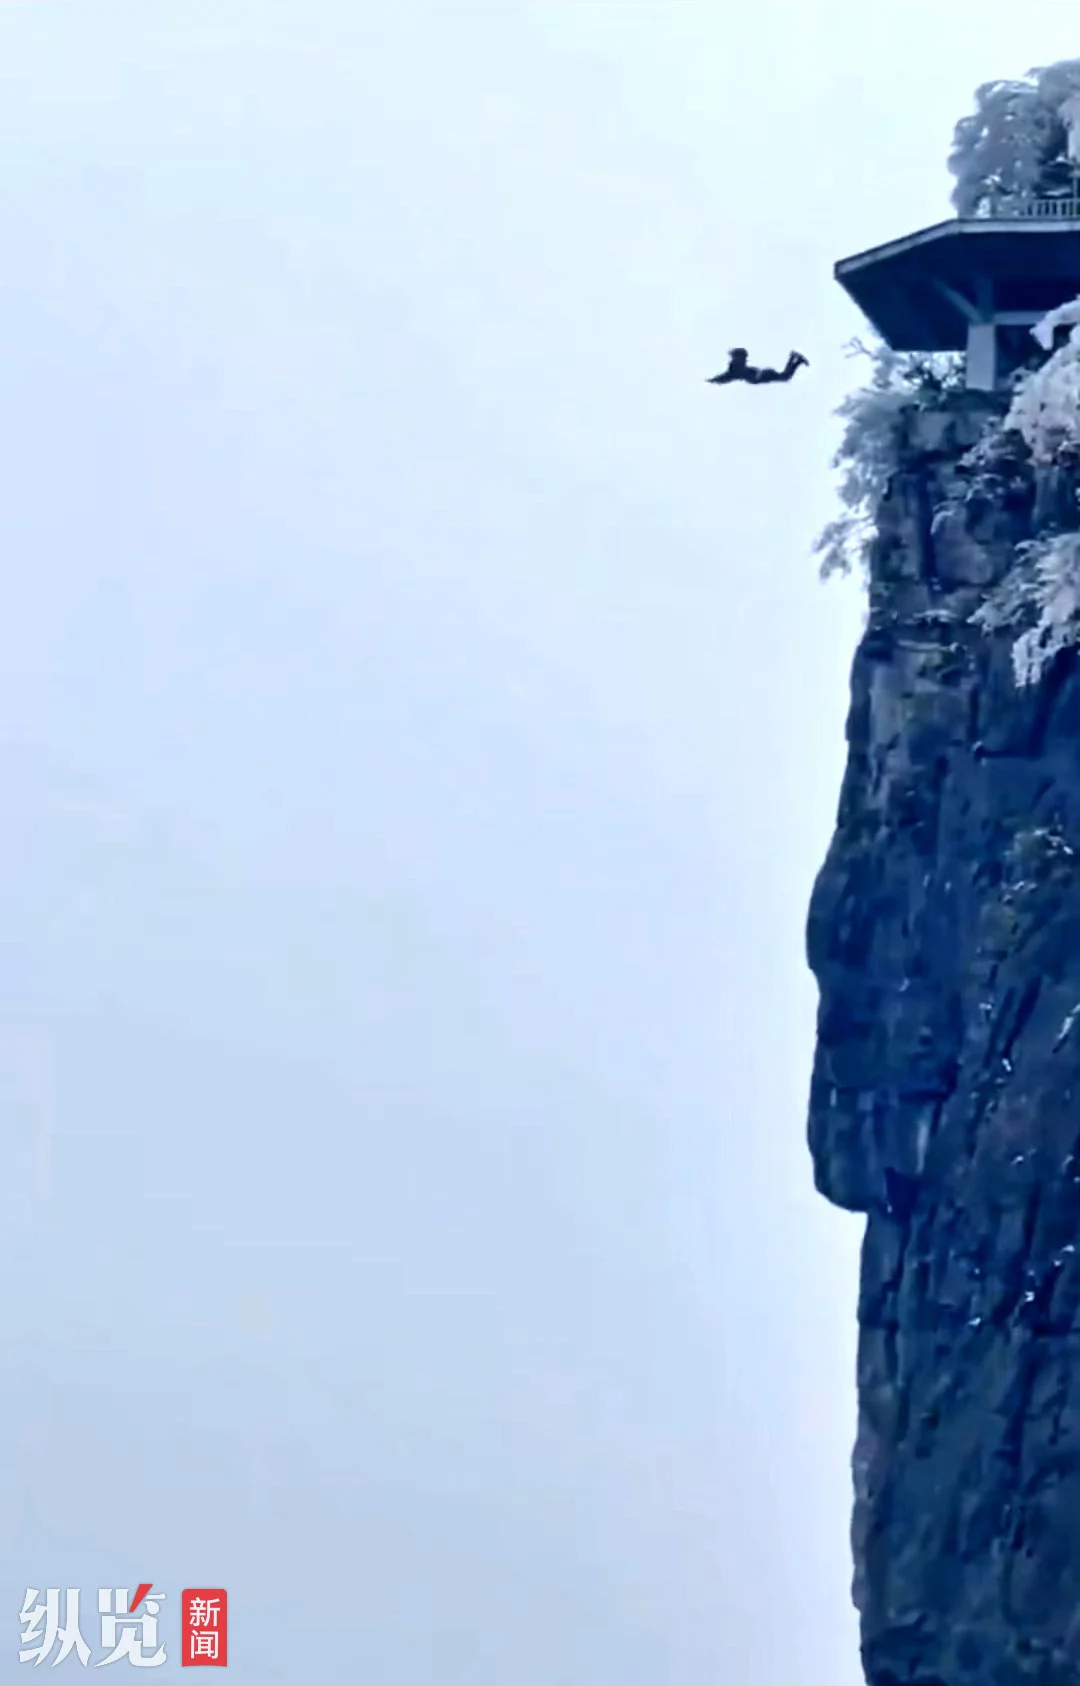 视频显示有人从山顶跳下（来源/网络视频截图）